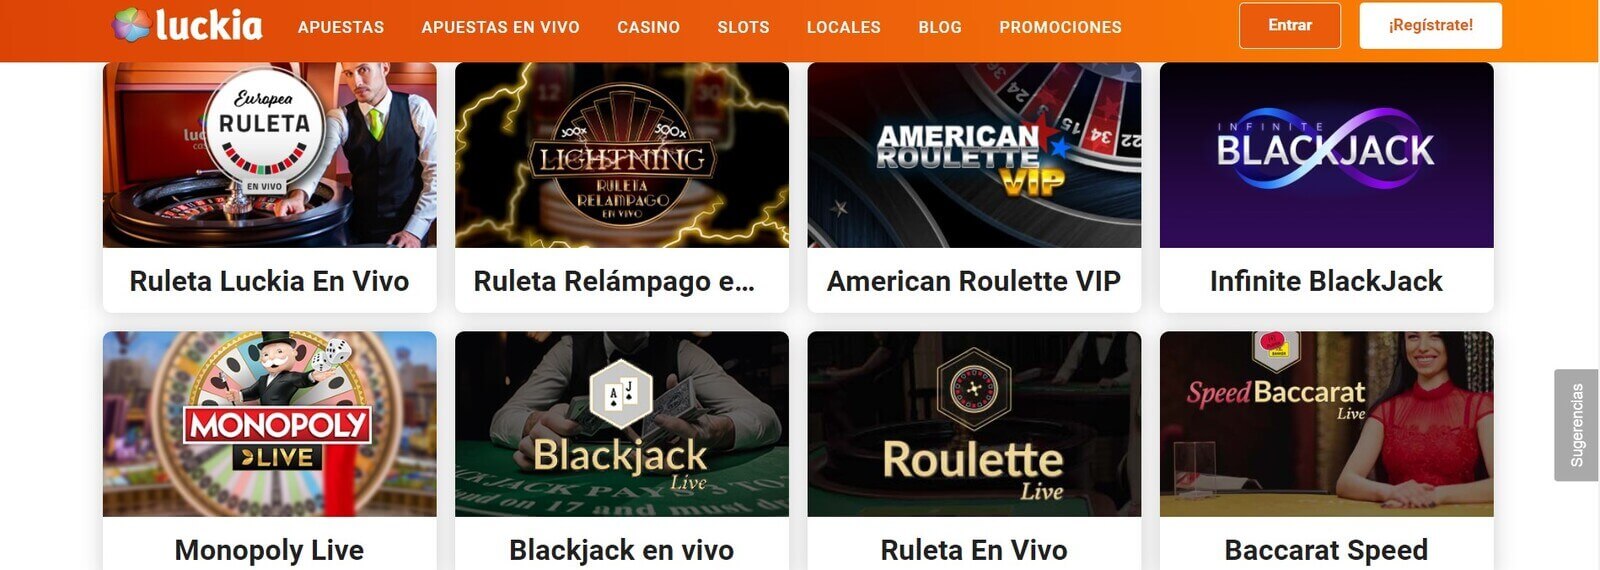 Juegos de Luckia Casino online